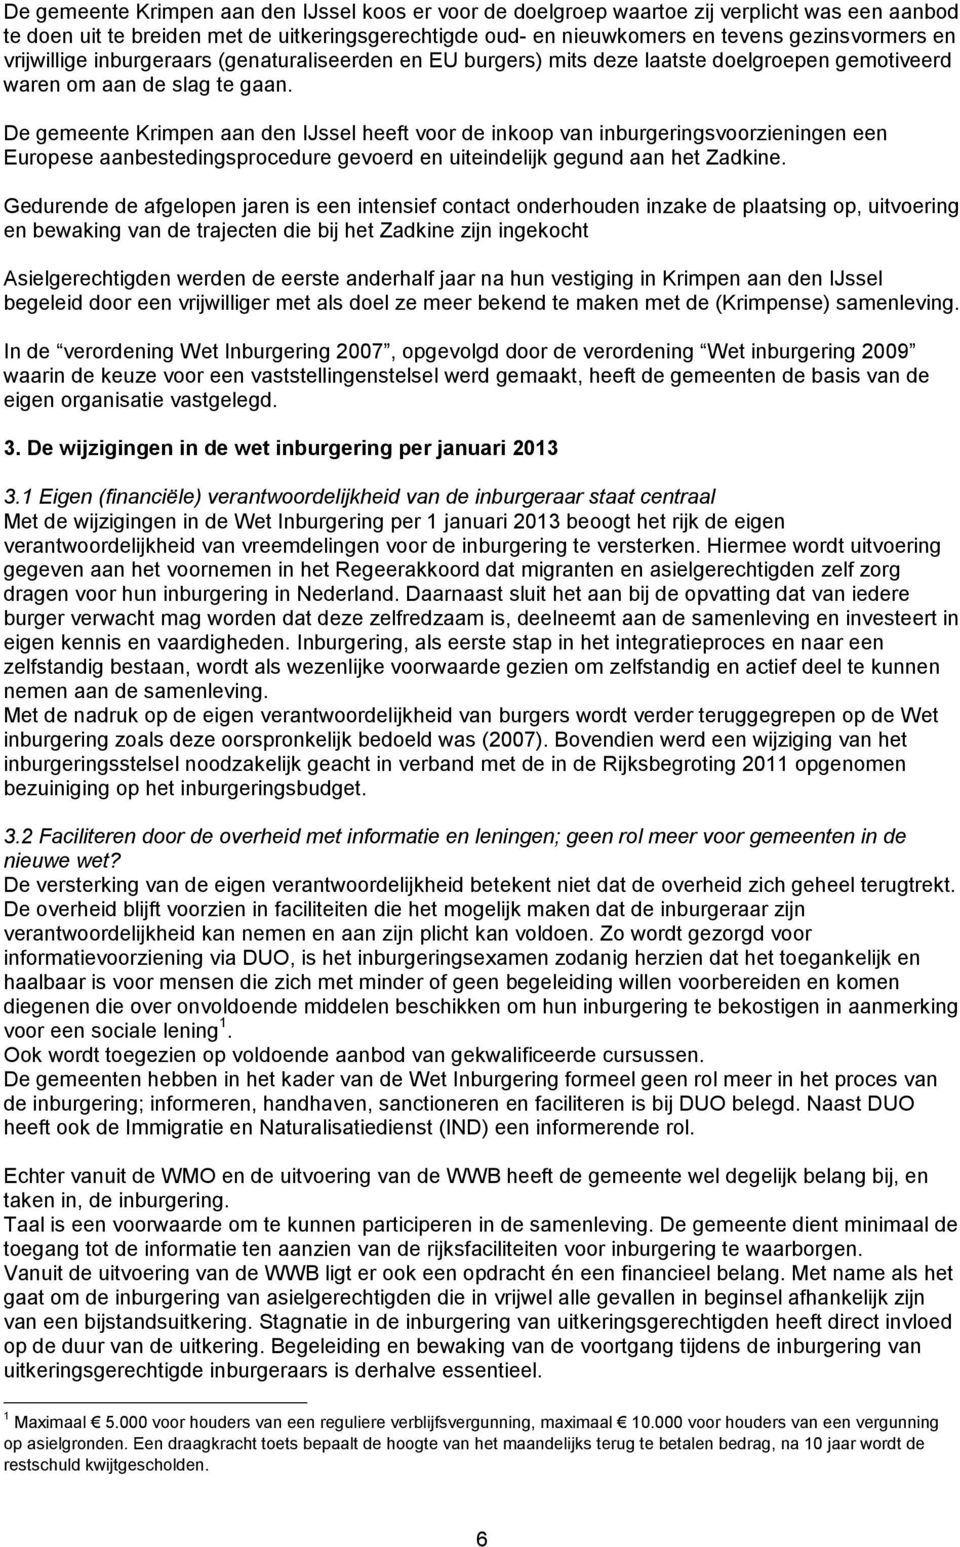 De gemeente Krimpen aan den IJssel heeft voor de inkoop van inburgeringsvoorzieningen een Europese aanbestedingsprocedure gevoerd en uiteindelijk gegund aan het Zadkine.